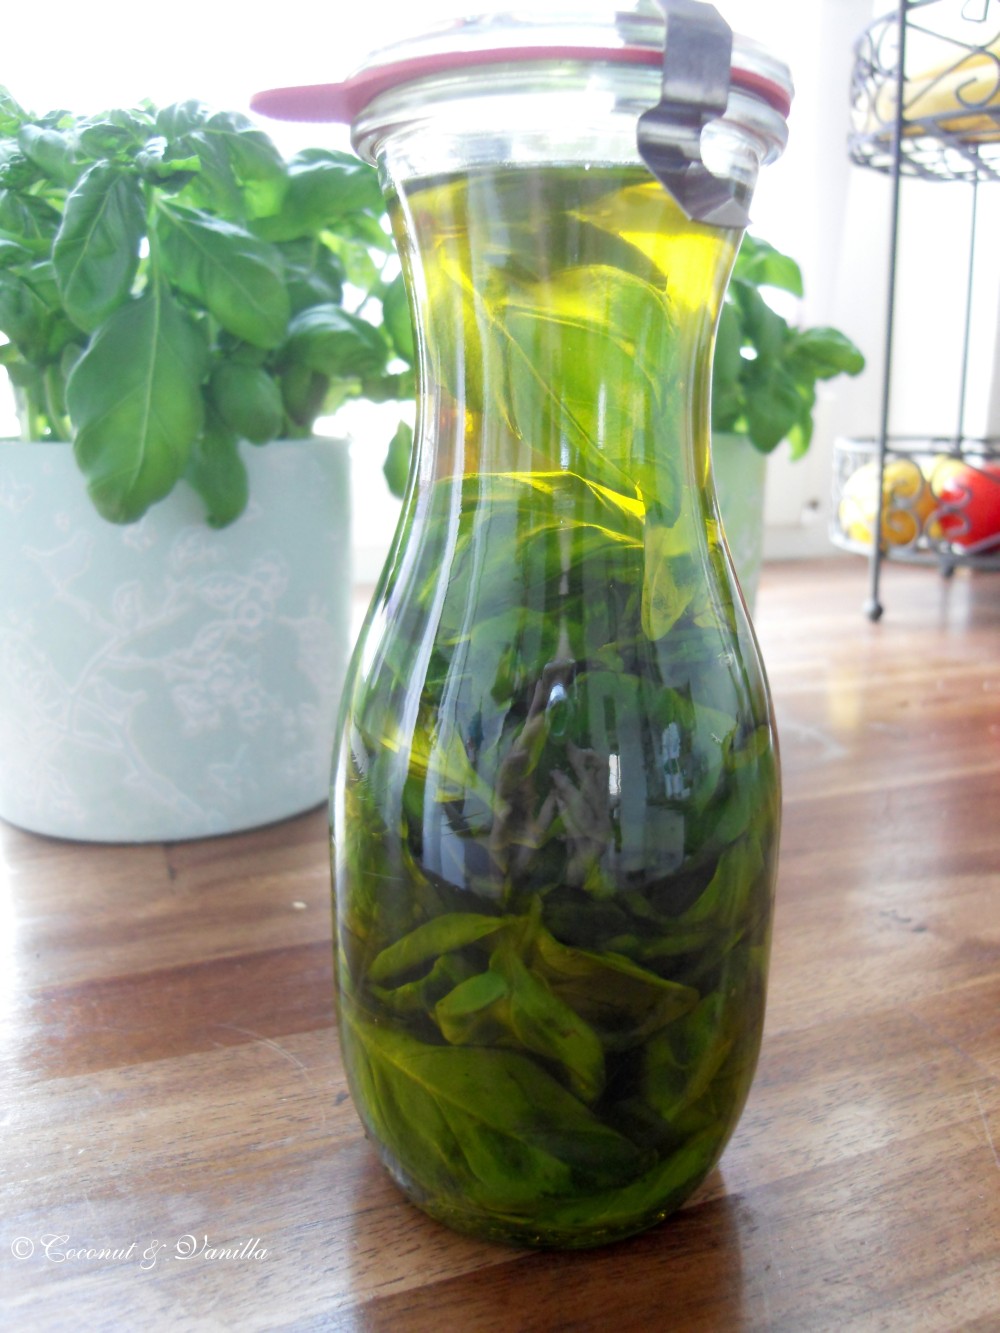 Strawberry Liquor, Basil Olive Oil & Elderflower Vinegar